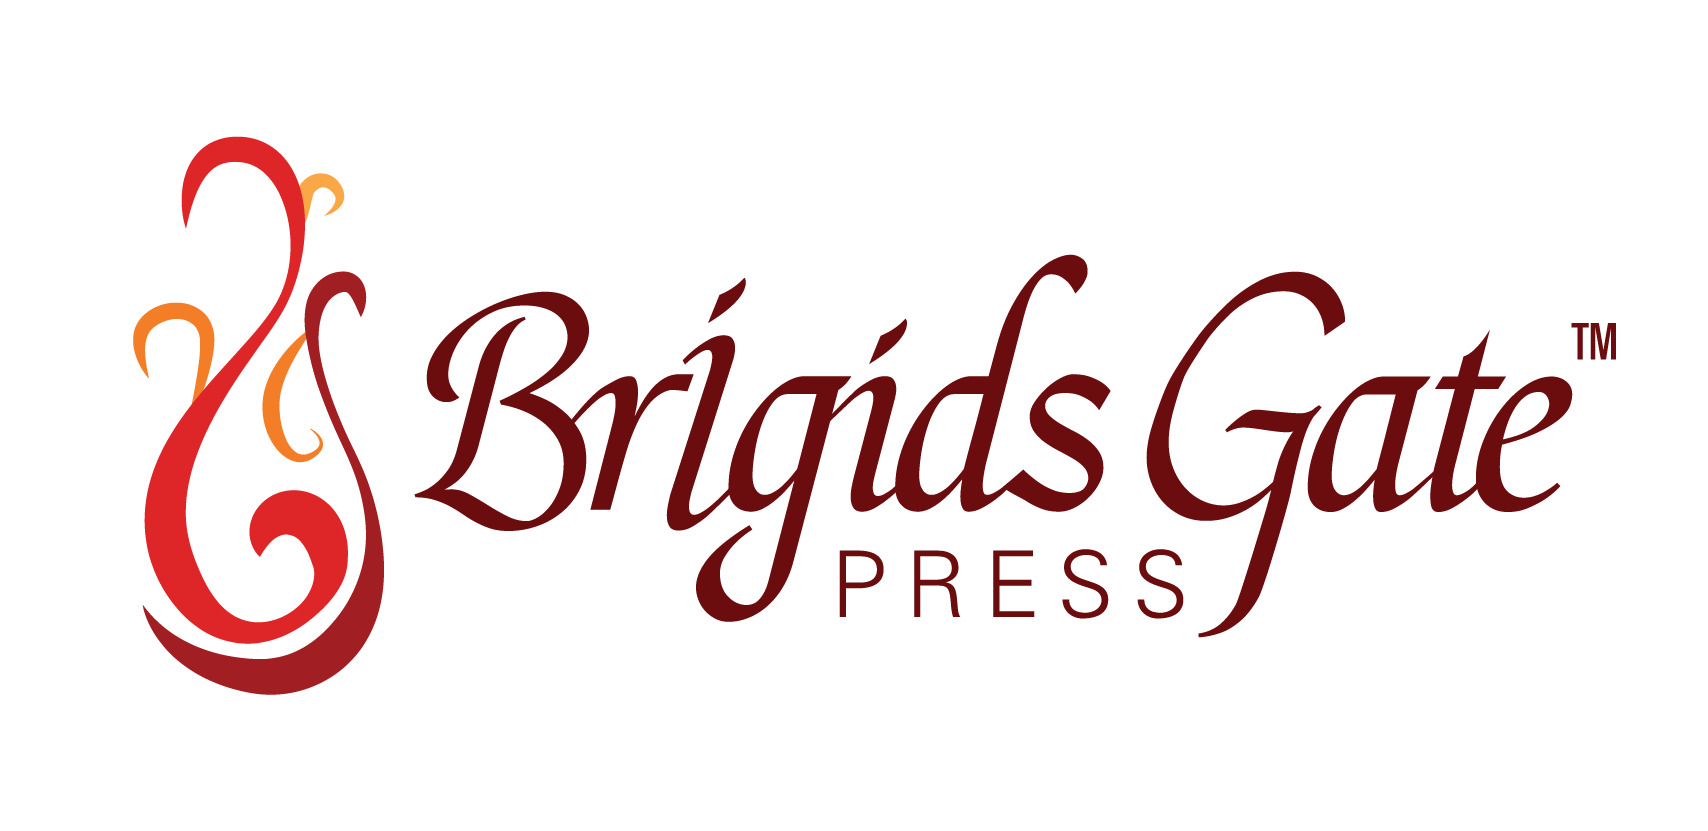 Image of Brigids Gate Press logo